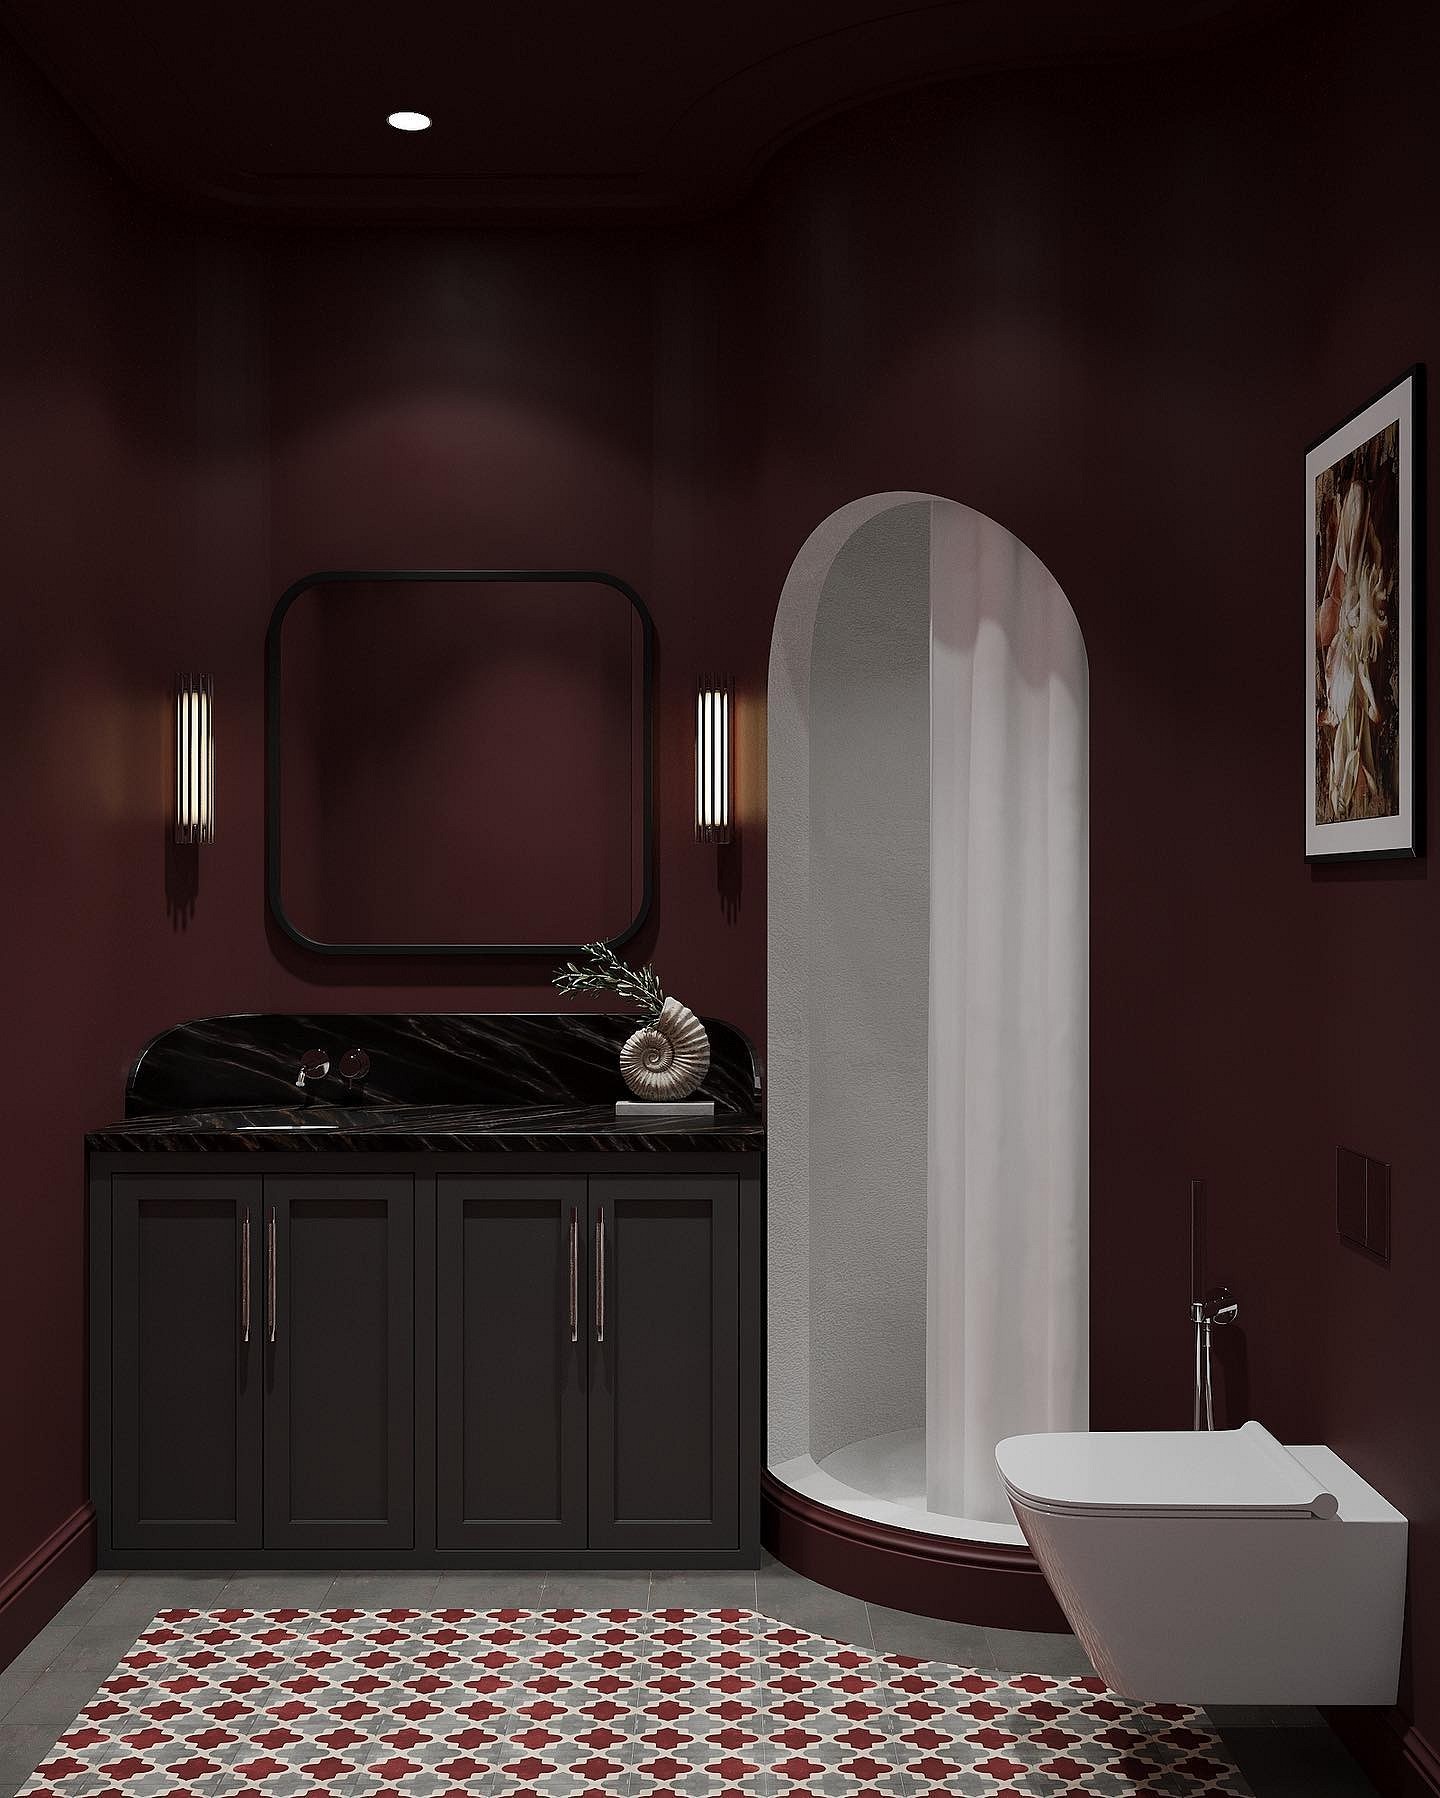 9 необычных решений для ванной комнаты из проектов дизайнеров3